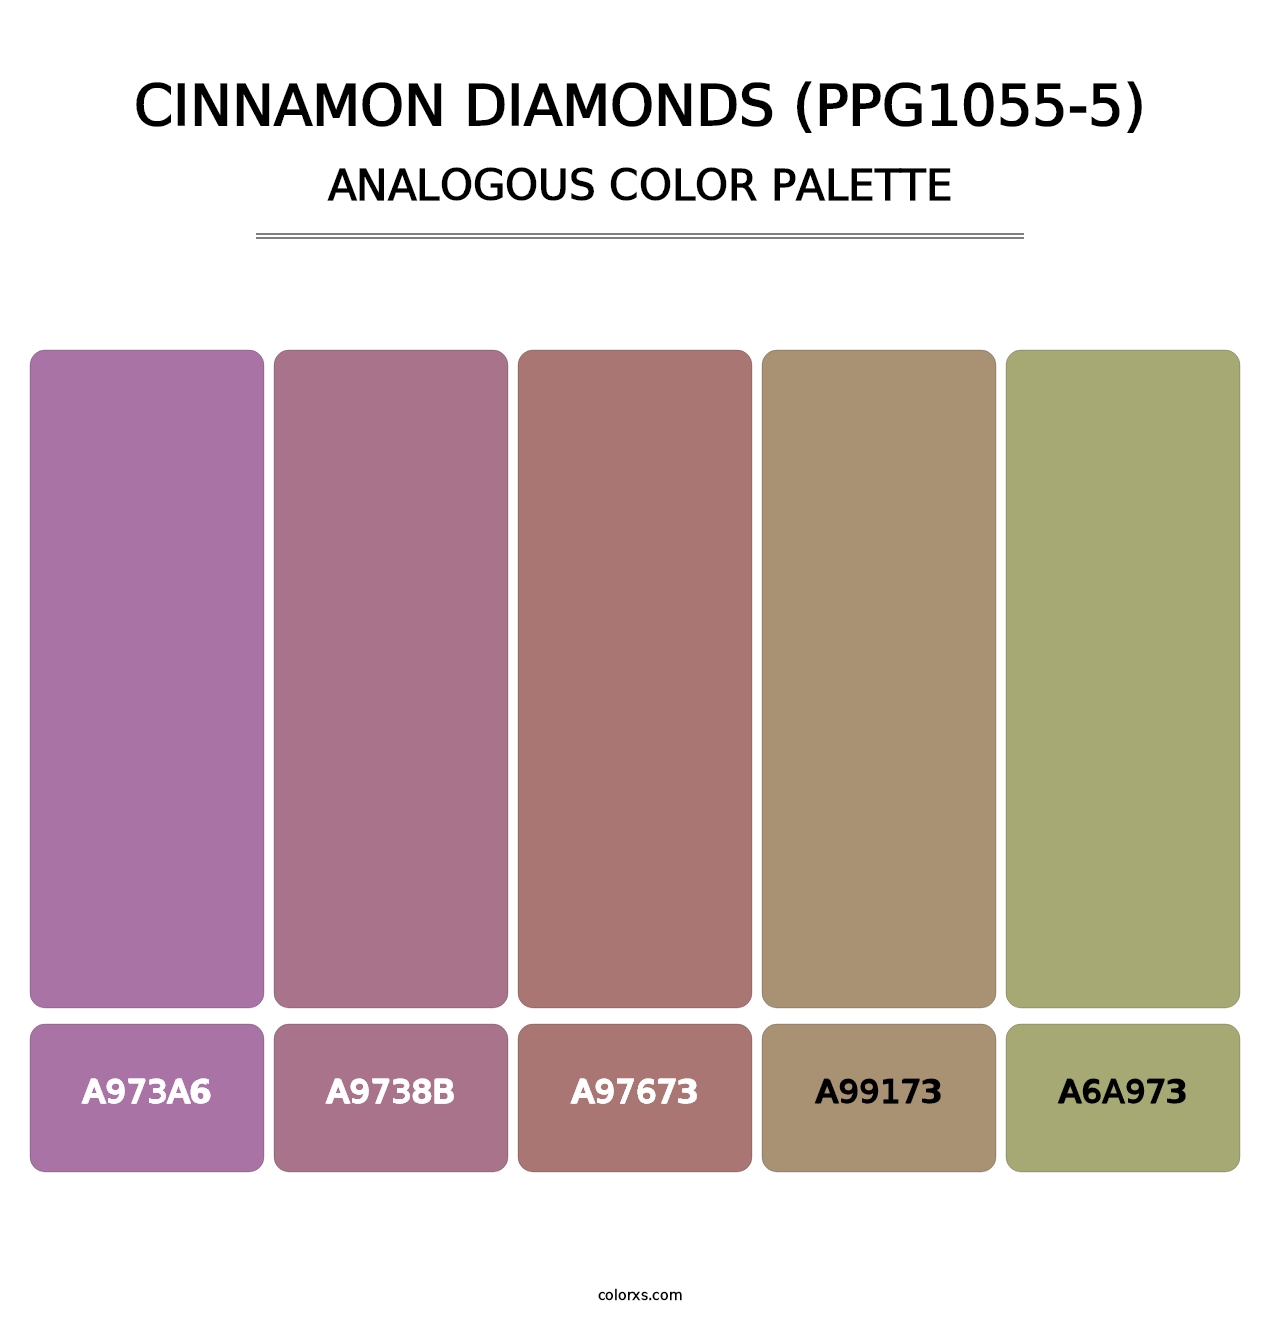 Cinnamon Diamonds (PPG1055-5) - Analogous Color Palette